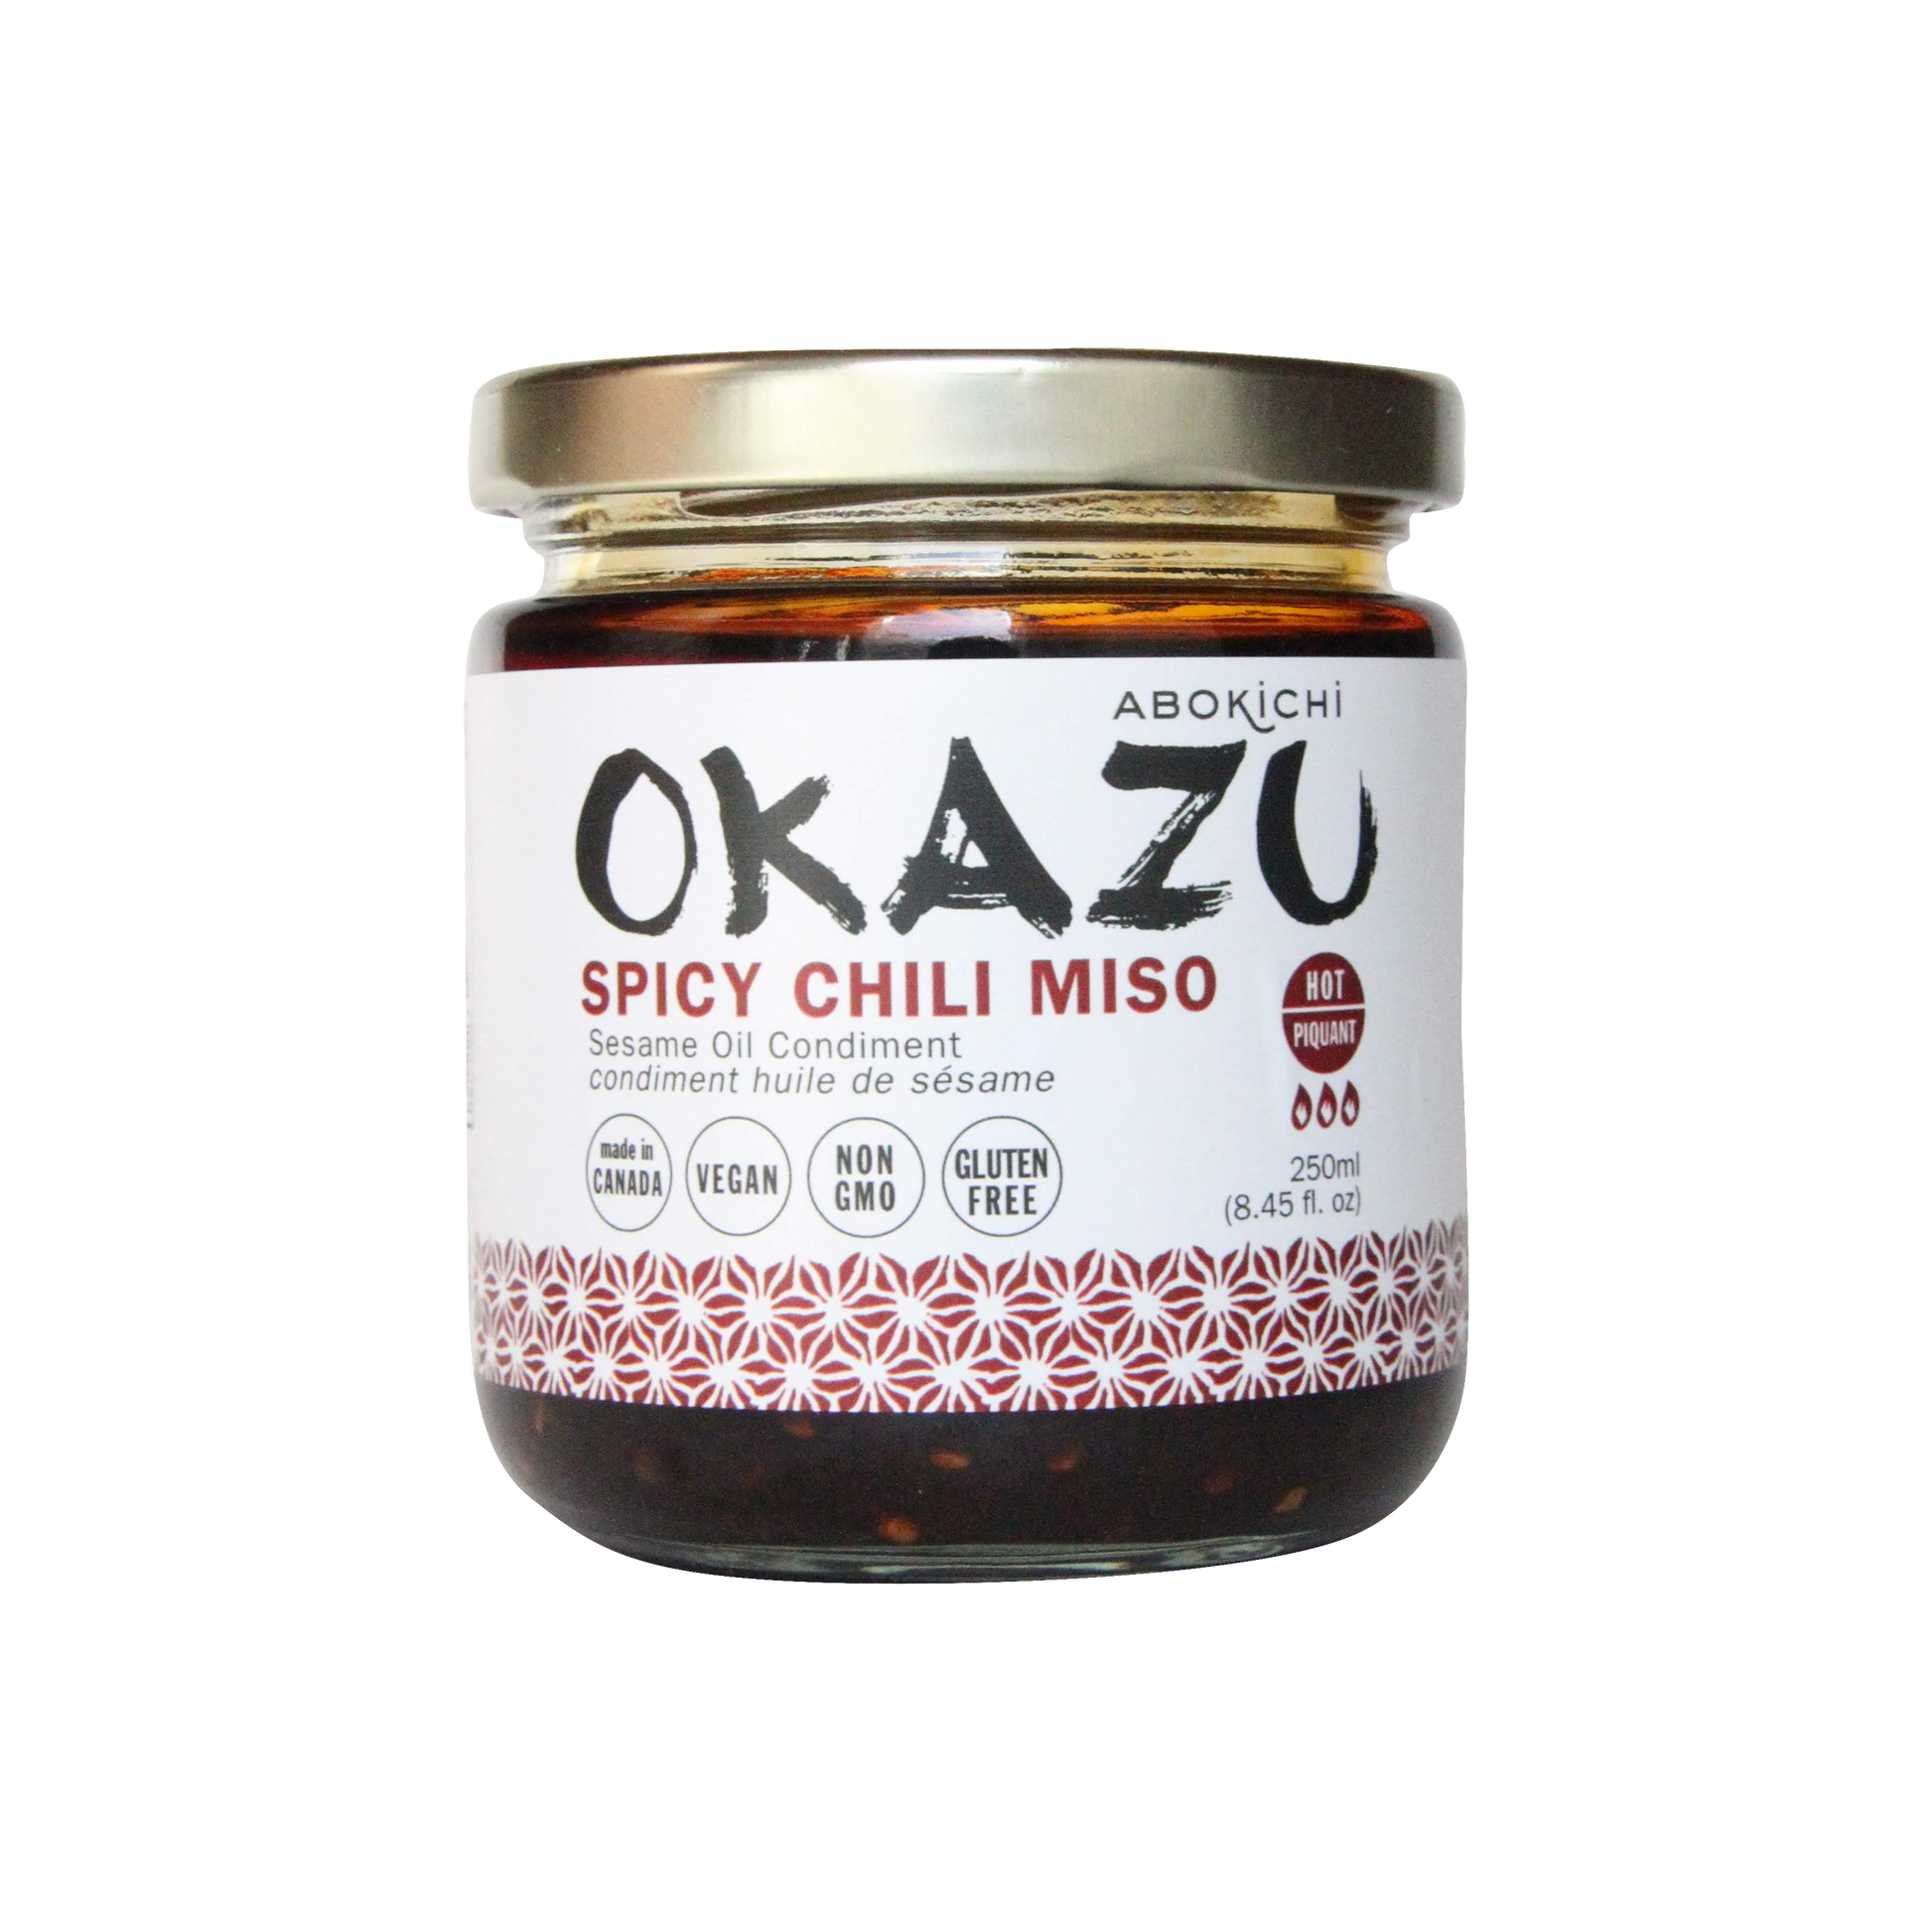 OKAZU - SPICY CHILI MISO - Japanese chili miso oil condiment